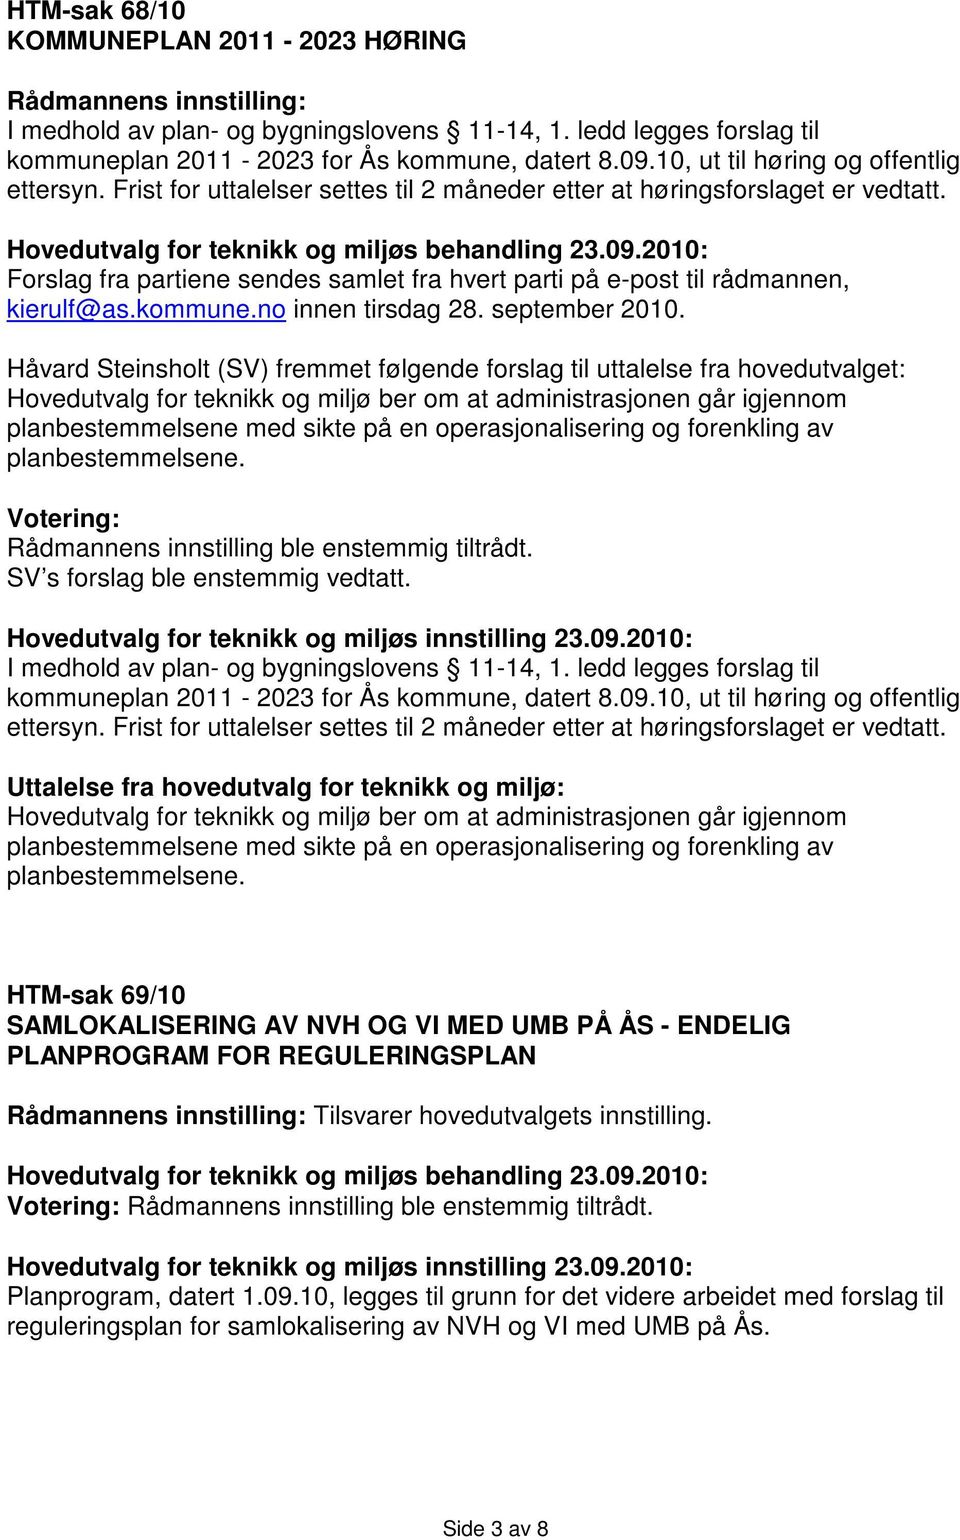 Forslag fra partiene sendes samlet fra hvert parti på e-post til rådmannen, kierulf@as.kommune.no innen tirsdag 28. september 2010.